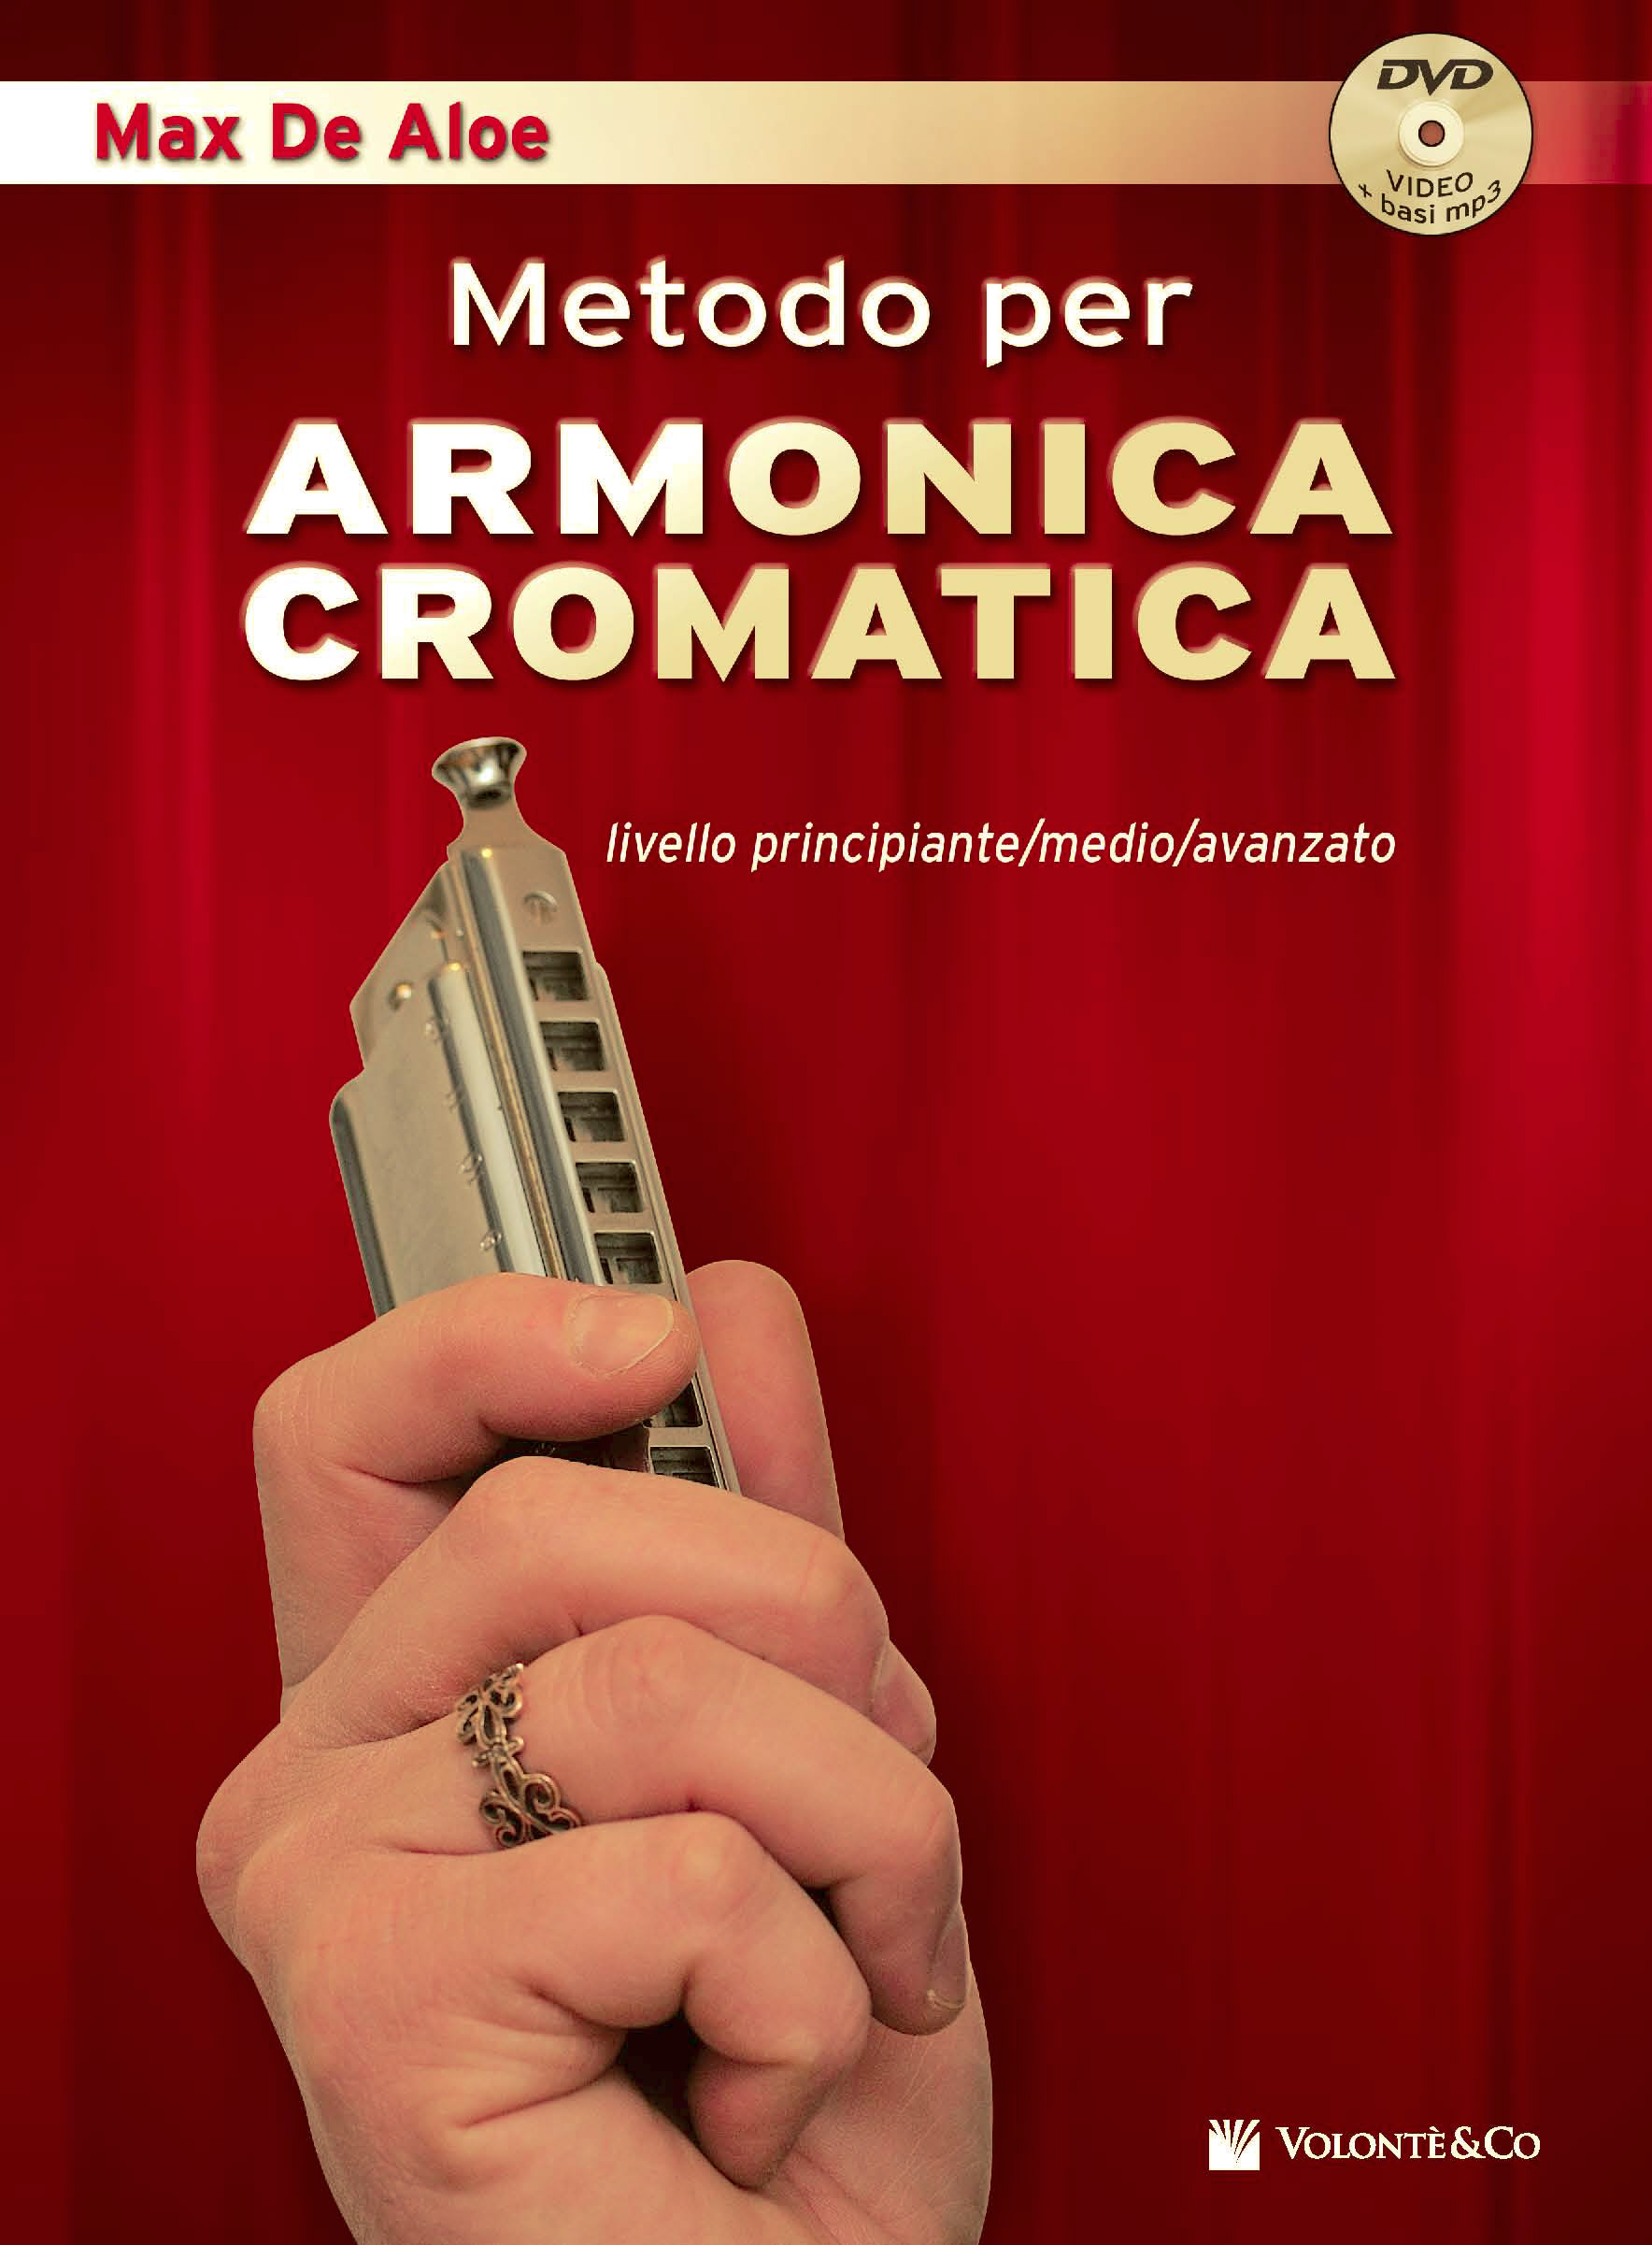 Metodo per Armonica Cromatica - Con DVD + basi mp3